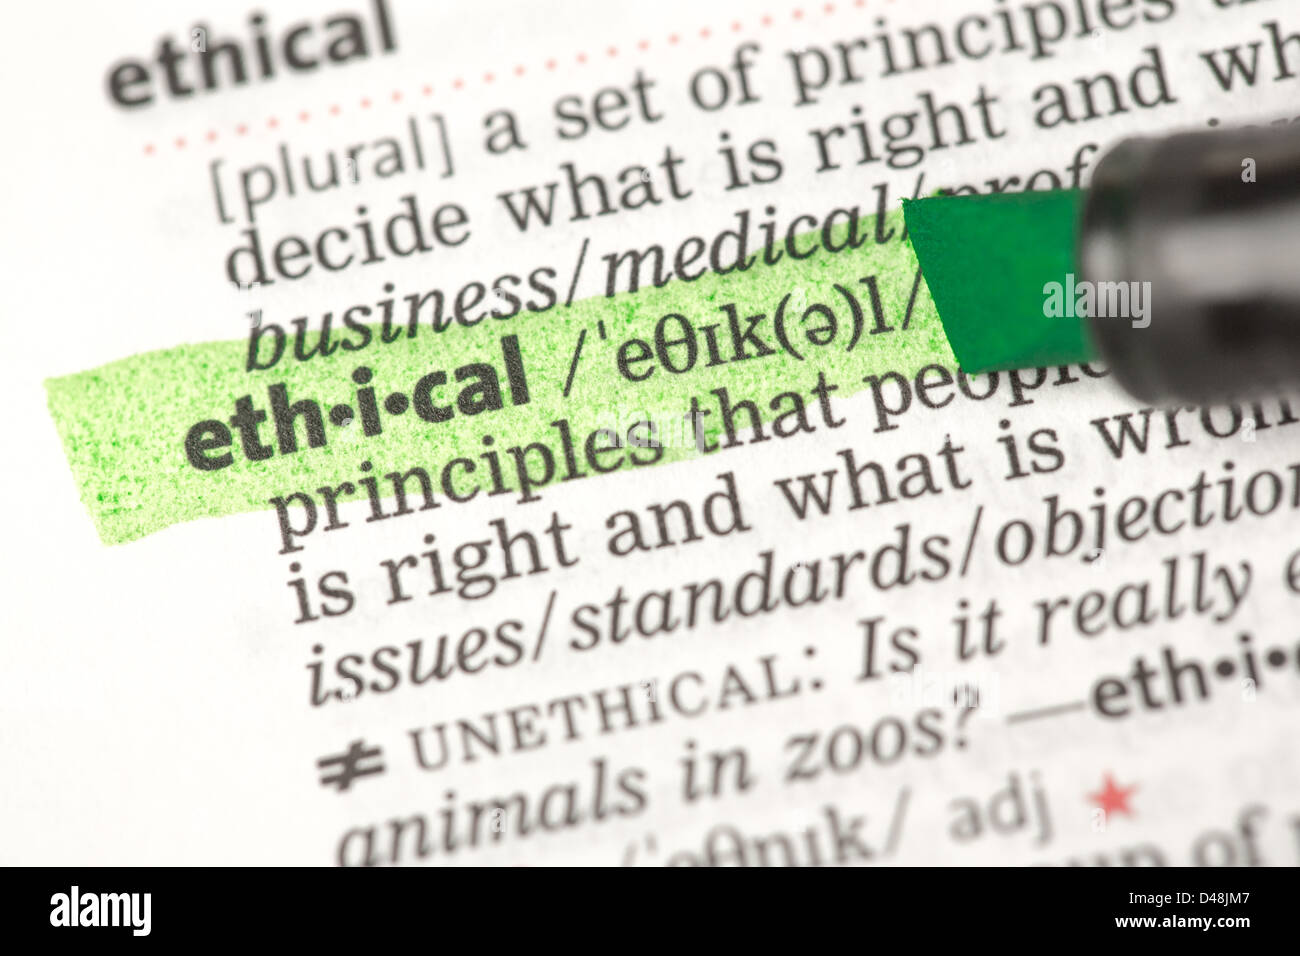 Definizione di etica evidenziato in verde Foto Stock